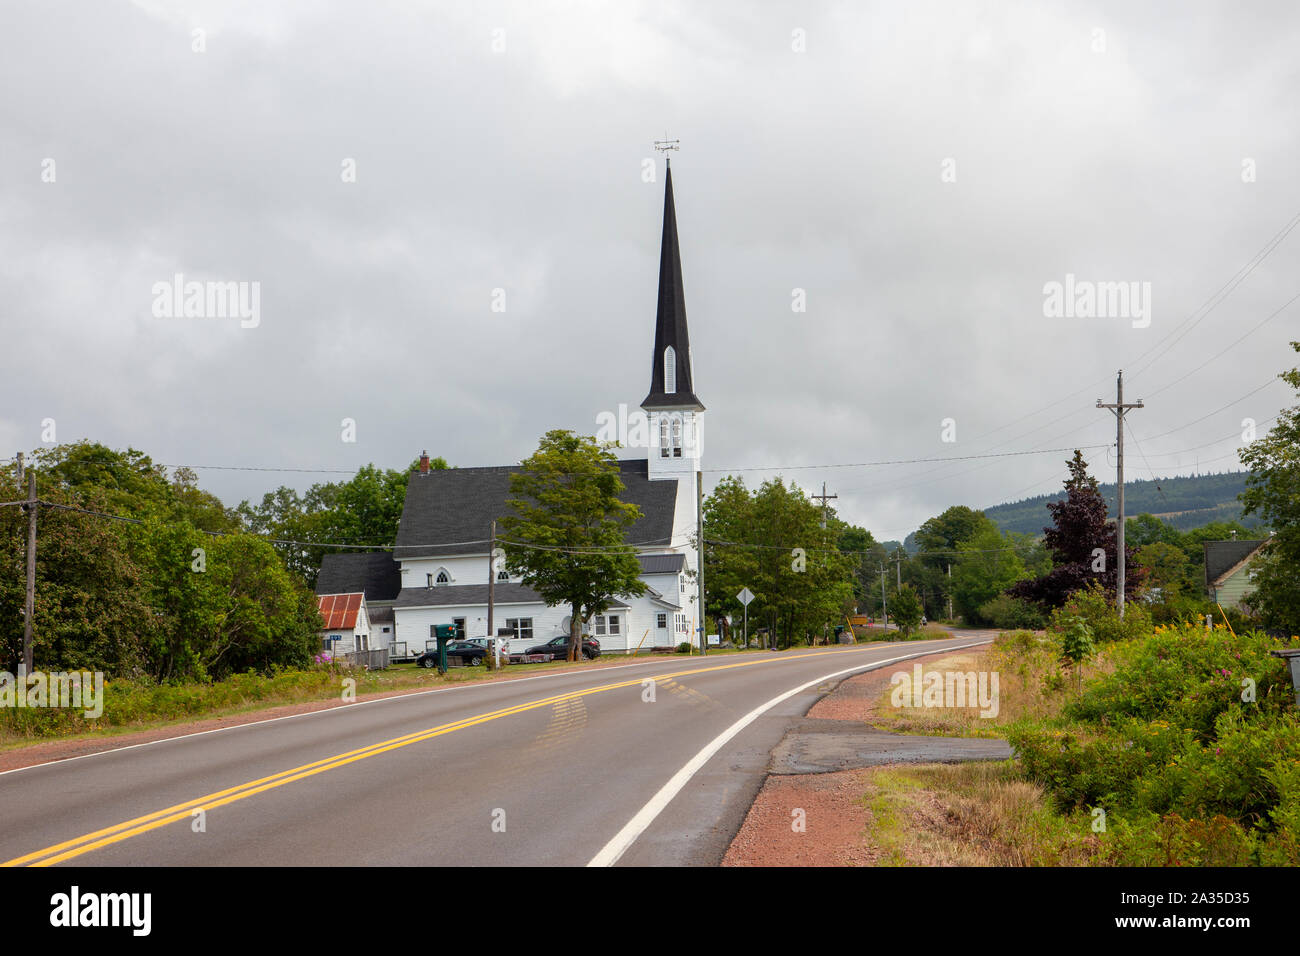 18 août 2019 - cinq îles, N.-É. - Les Peniel United Community Church sur la route 2, avec son clocher historique Banque D'Images